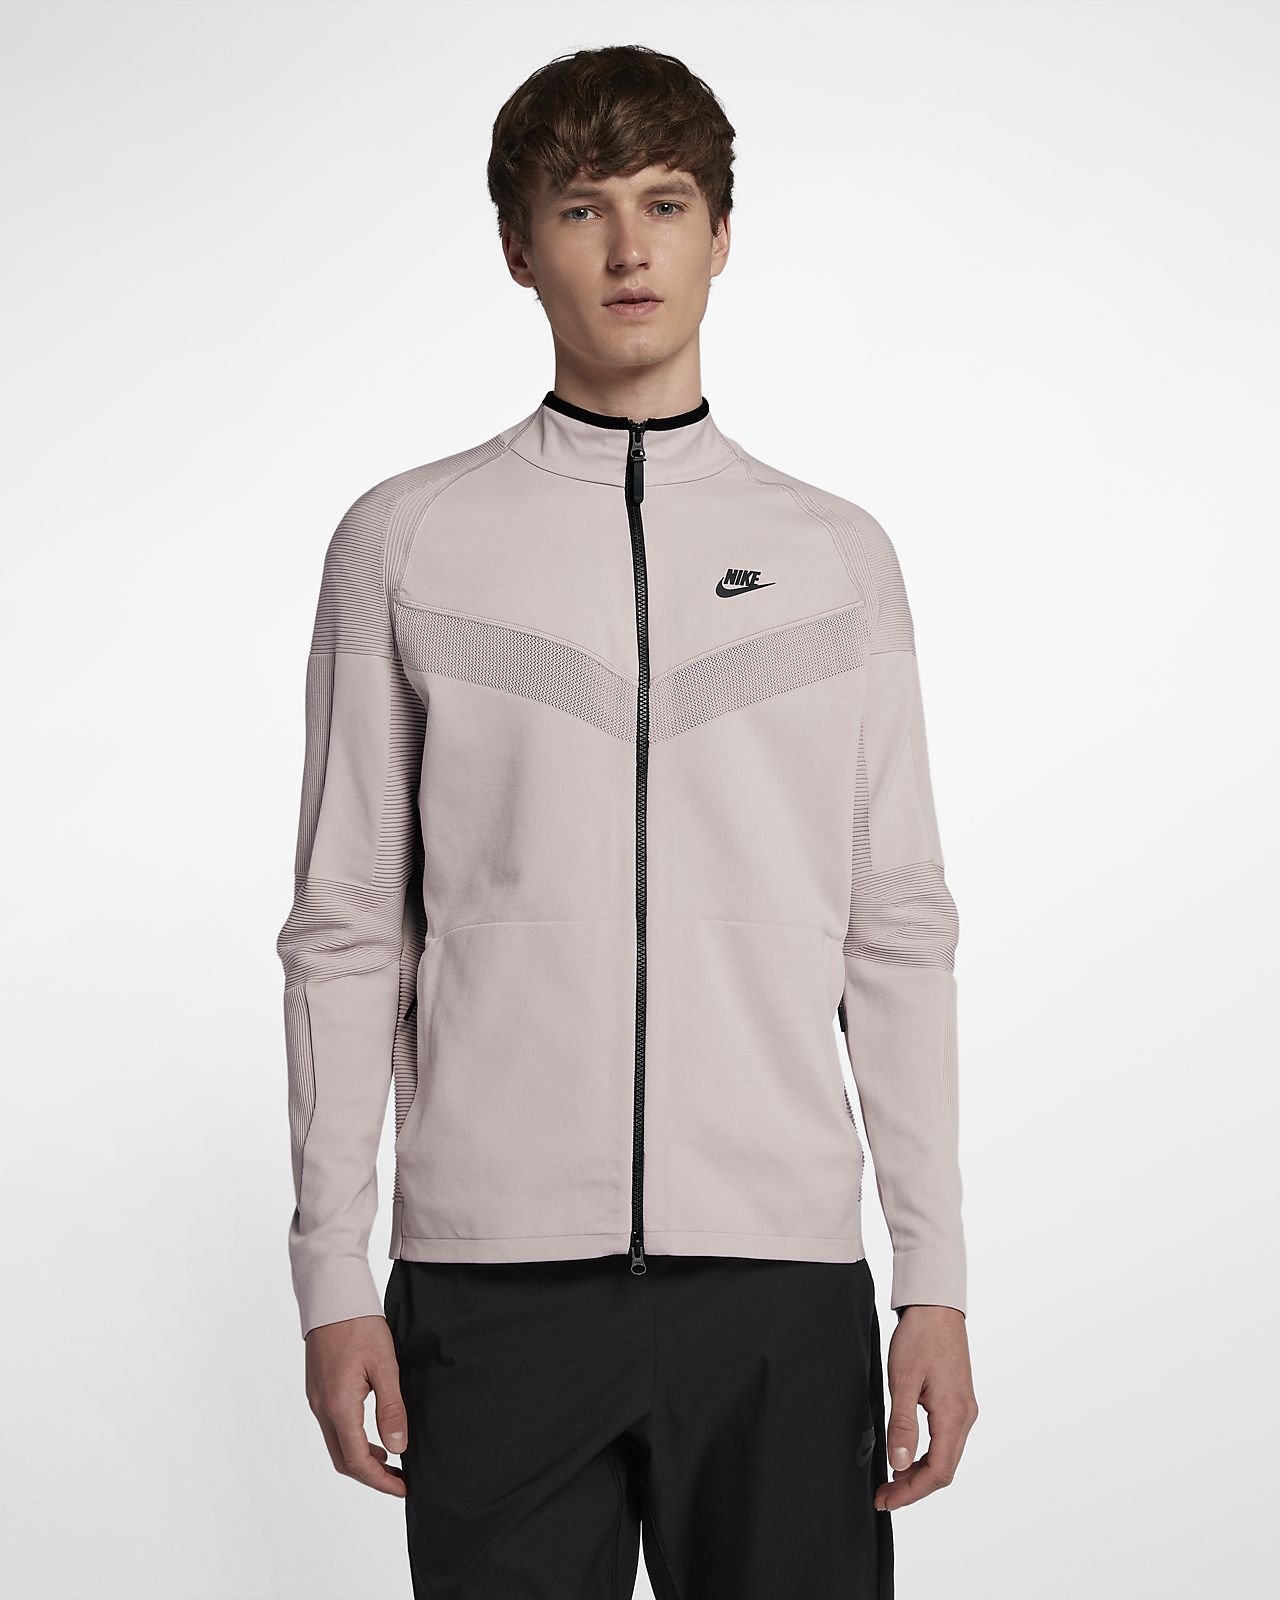 Nike Tech Knit Shield Jacket Model # MSRP $250 | eBay